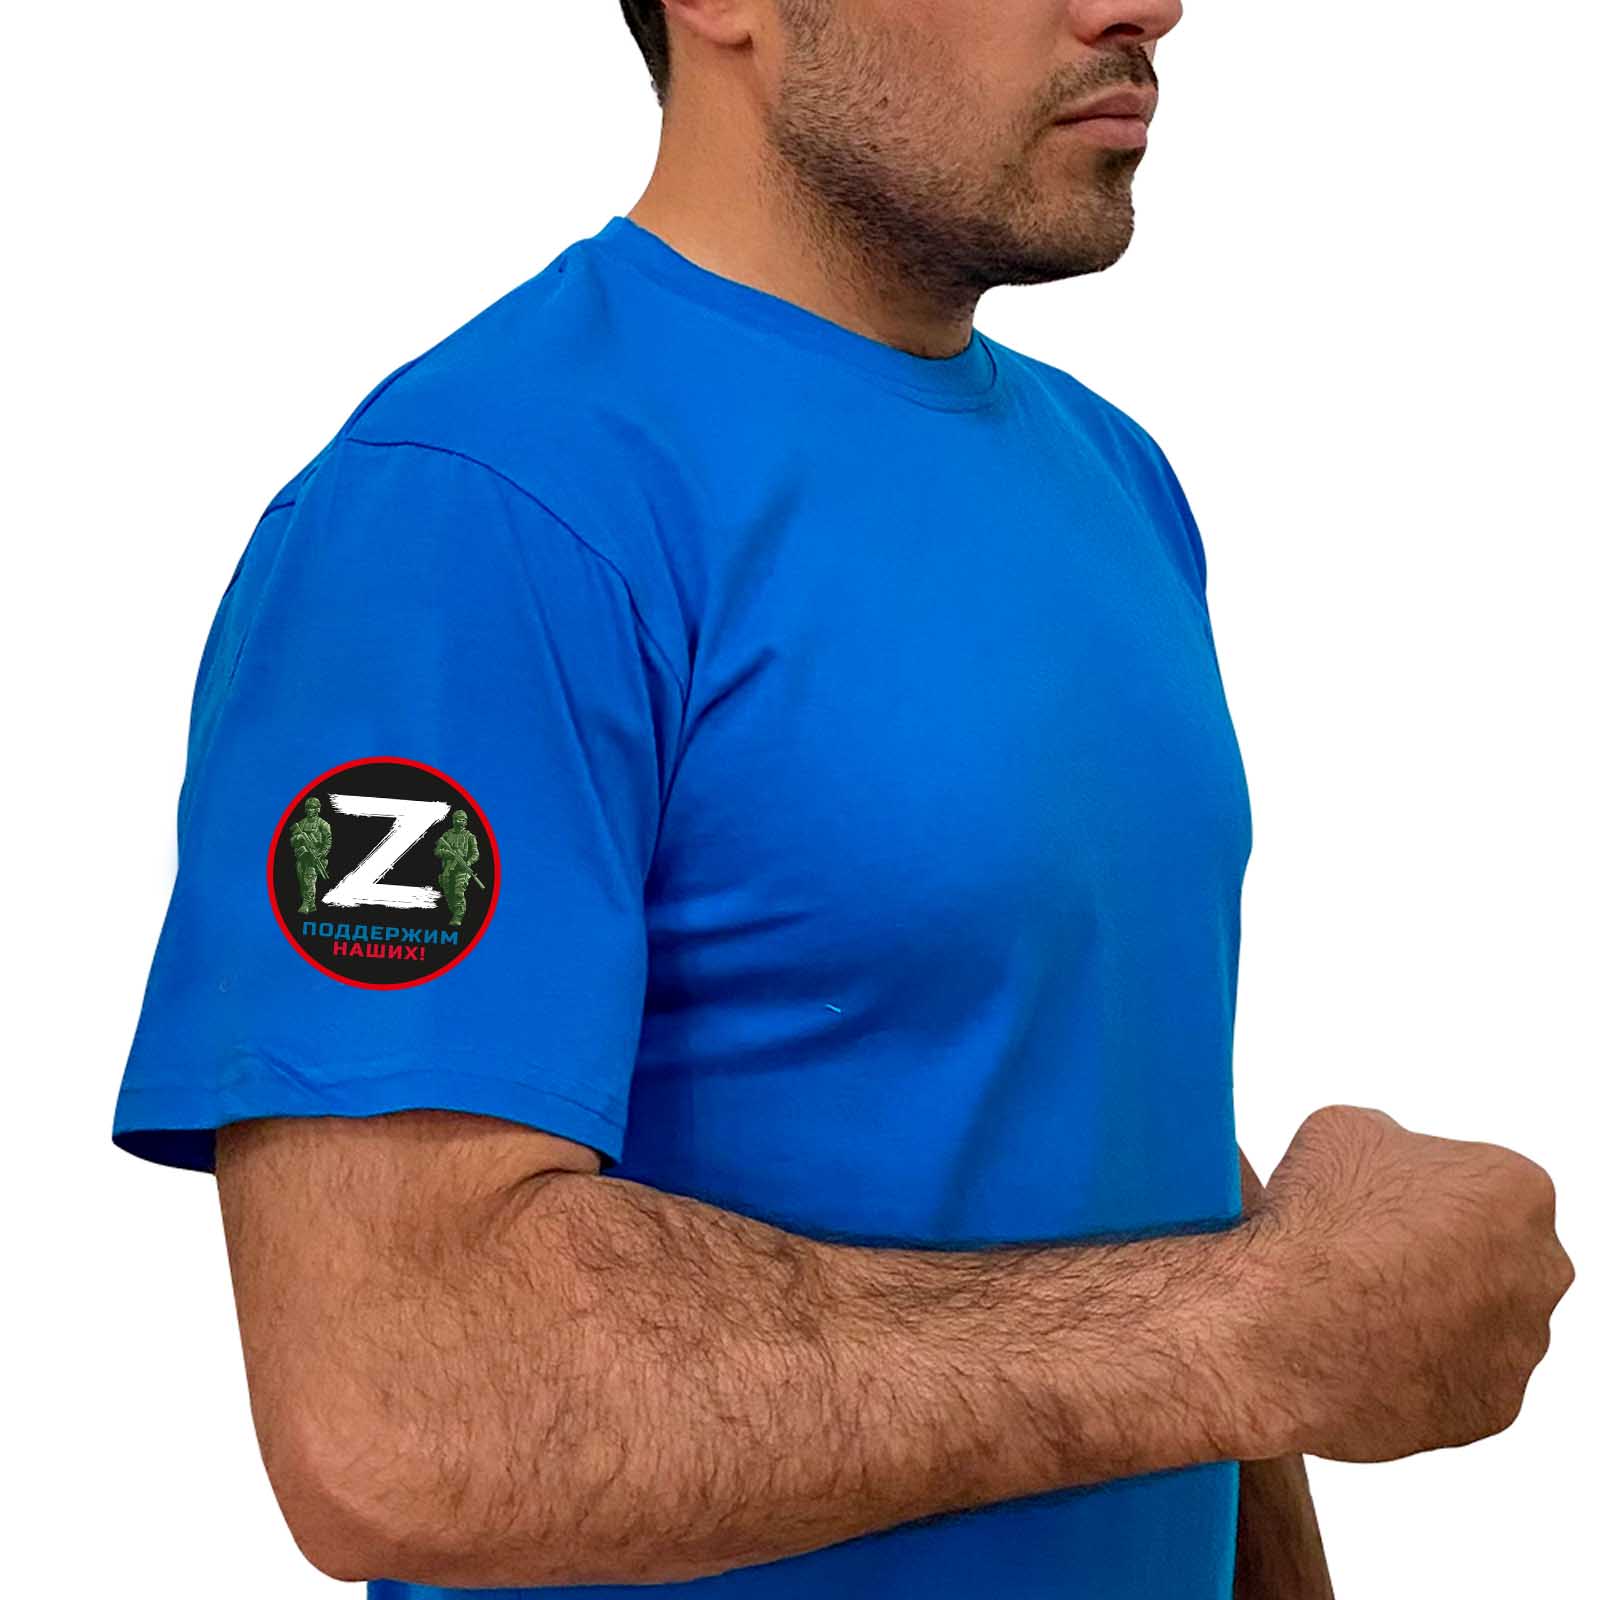 Купить трикотажную голубую футболку с литерой Z с доставкой